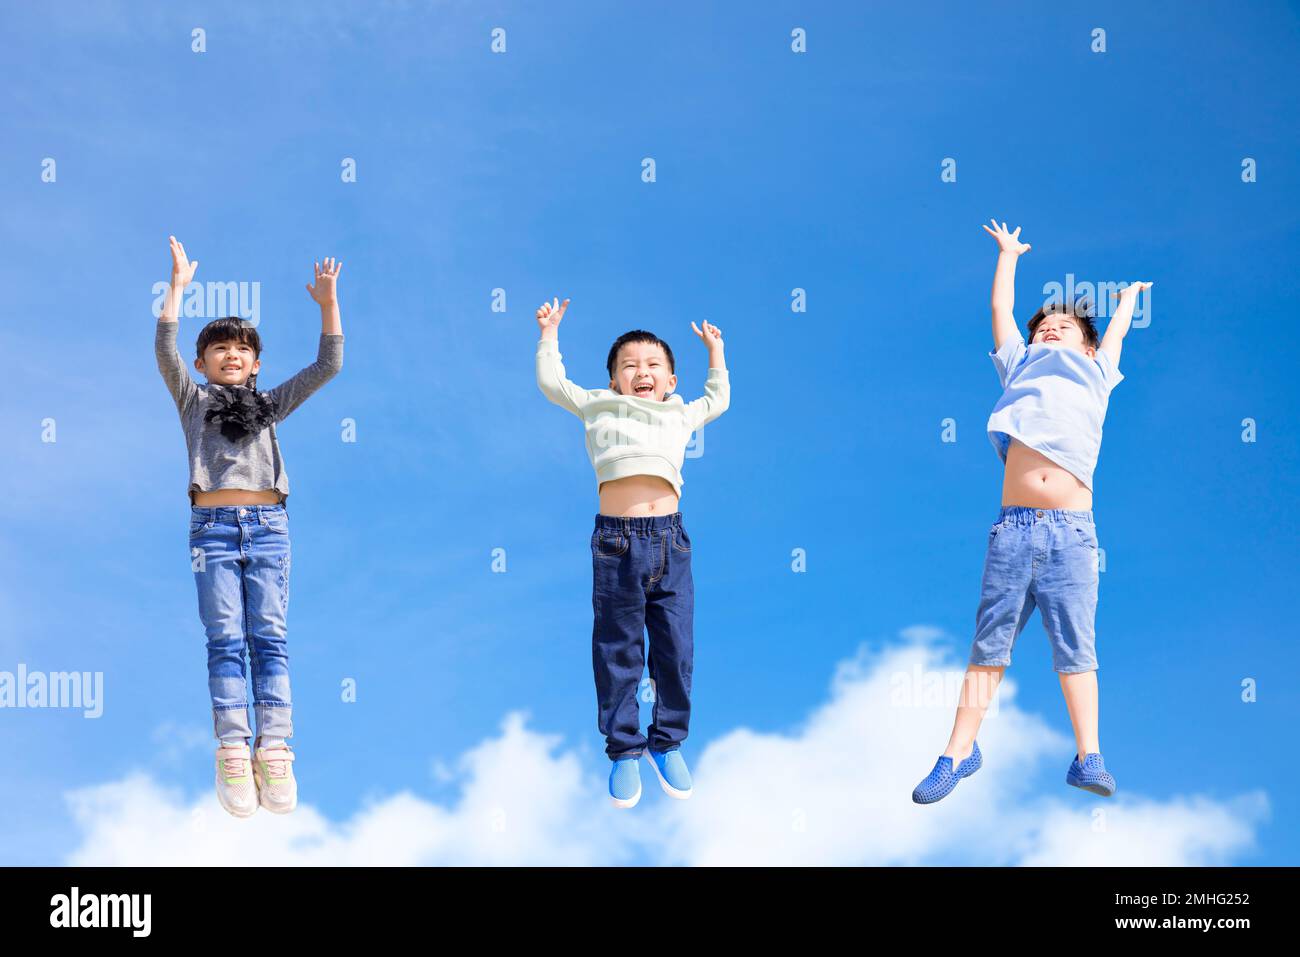 Glückliche Kinder, die springen und sich gegen den blauen Himmel bewegen Stockfoto